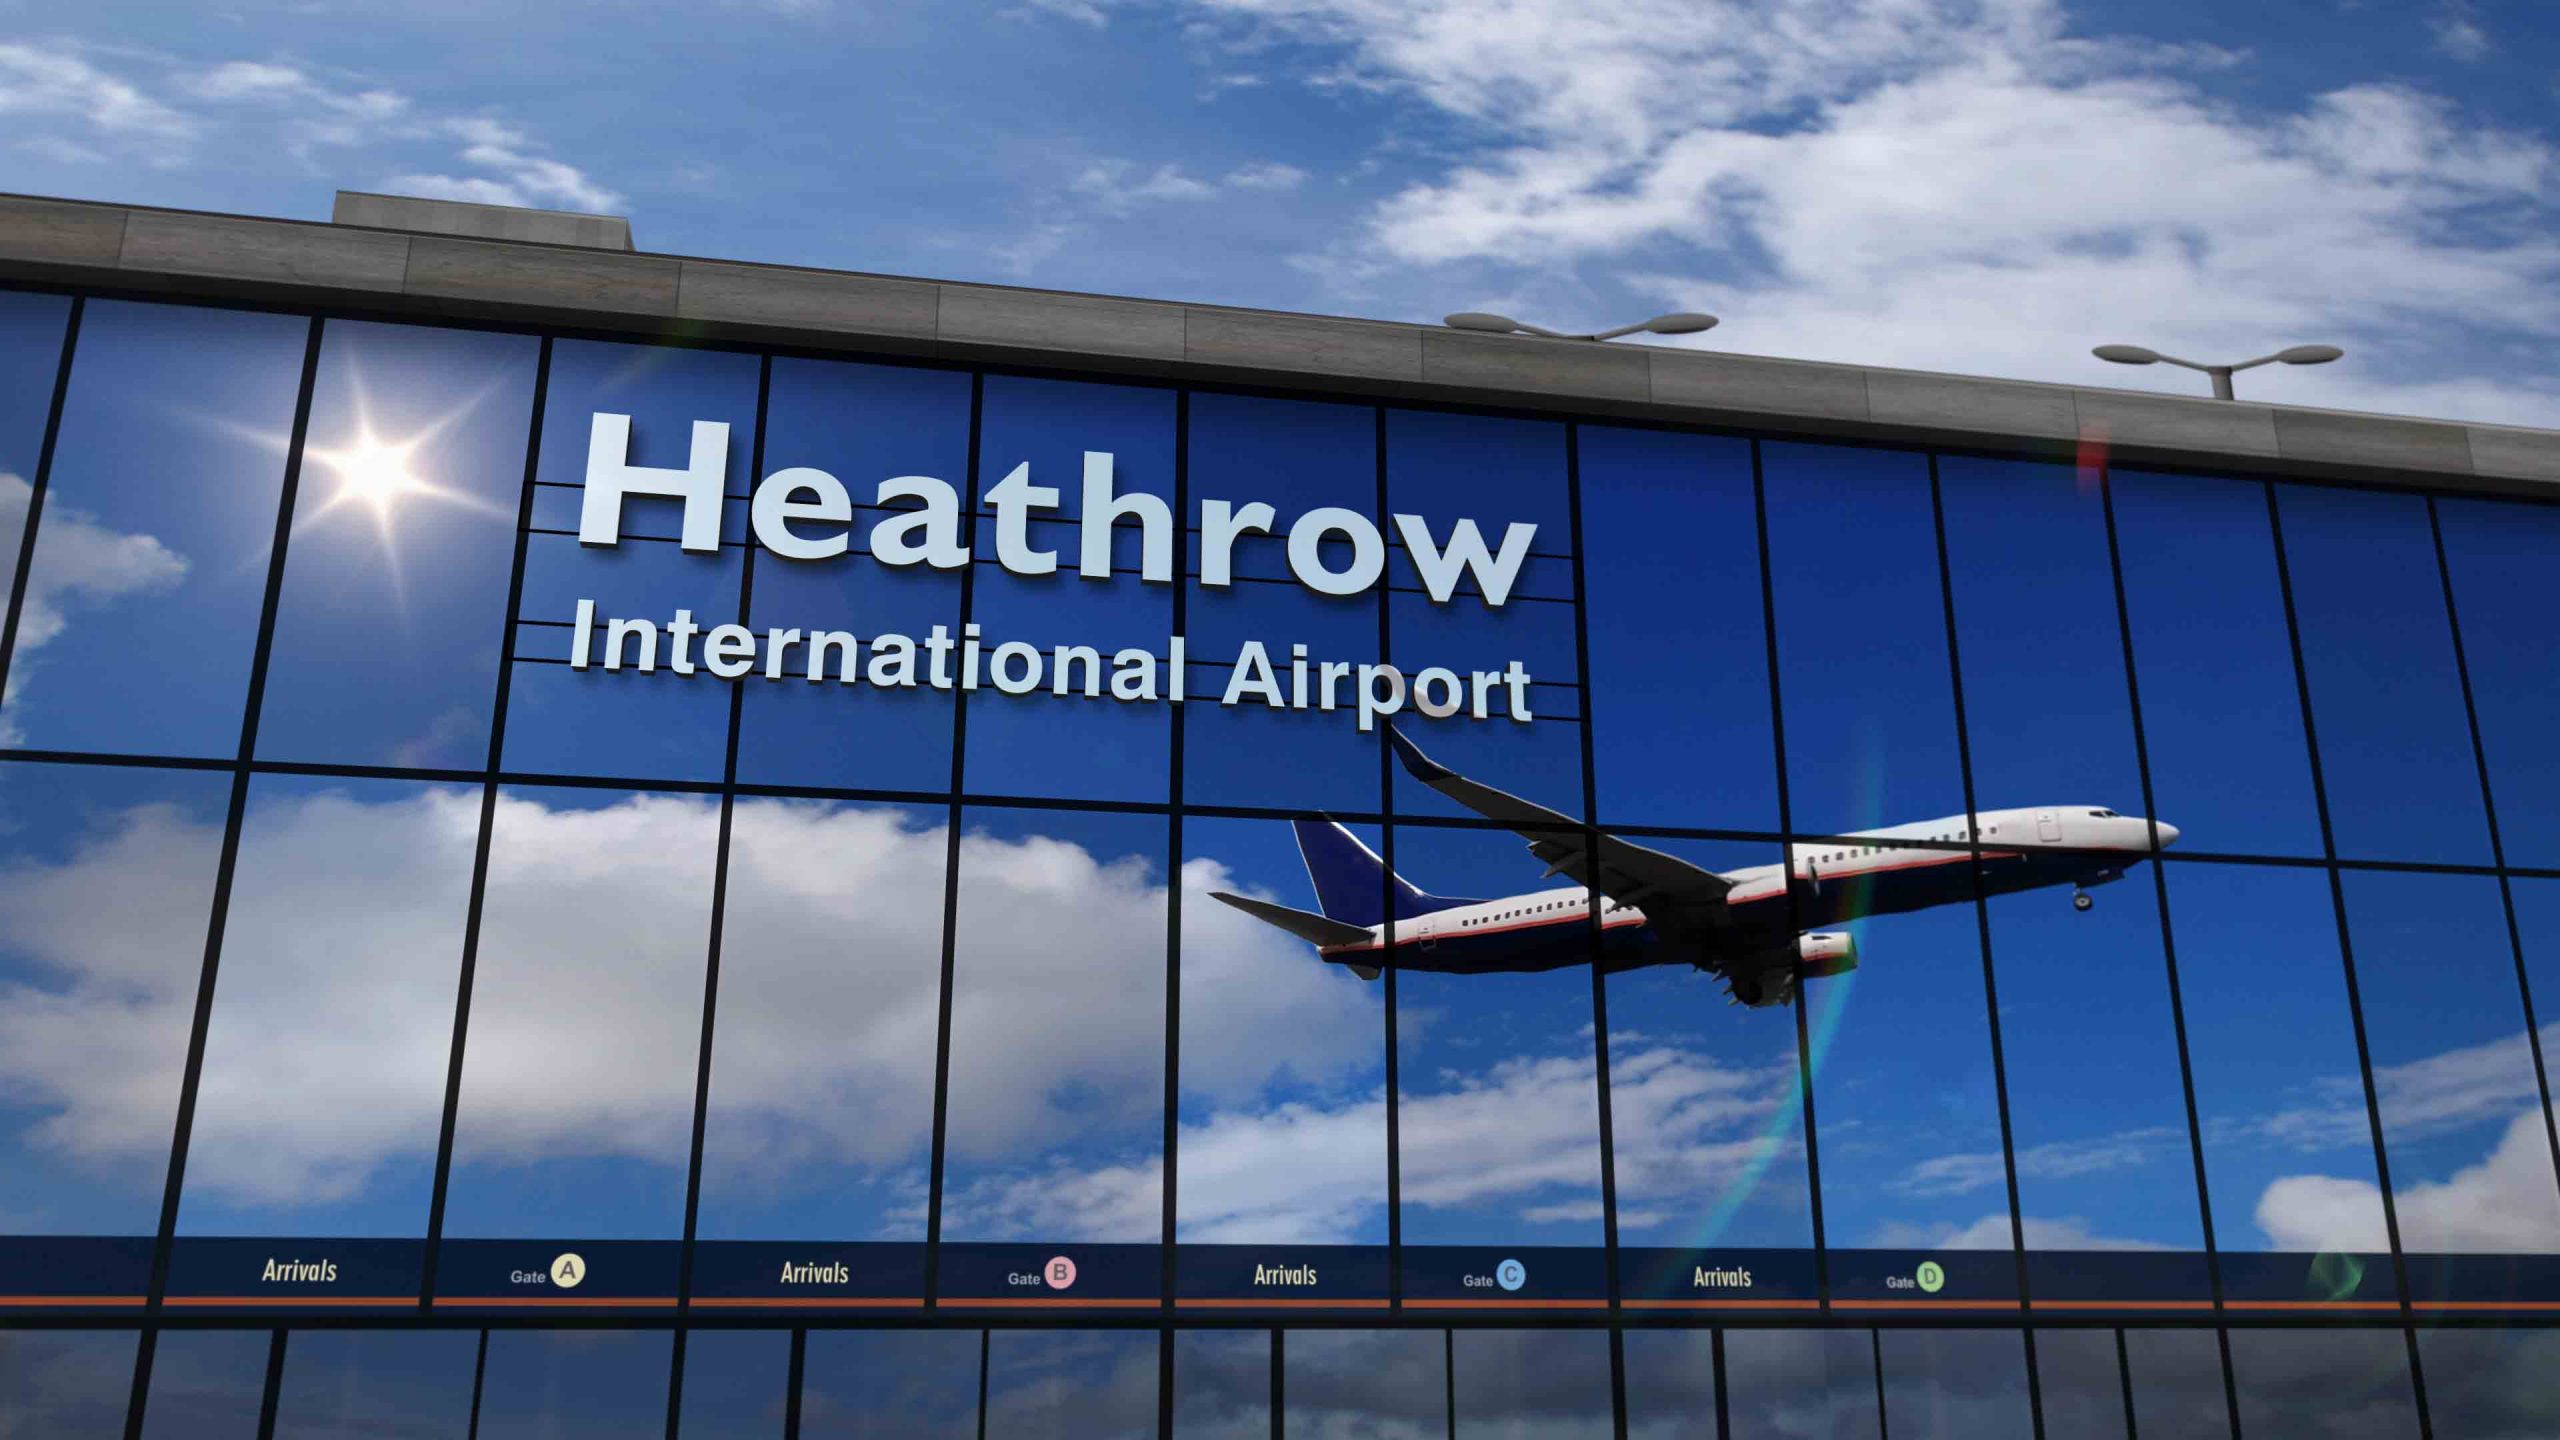 Imagem apresenta edifício do aeroporto de Heathrow, com janelas espelhadas e reflexo de avião levantando voo. Heathrow incentiva a utilização de SAF como combustível para a aviação.